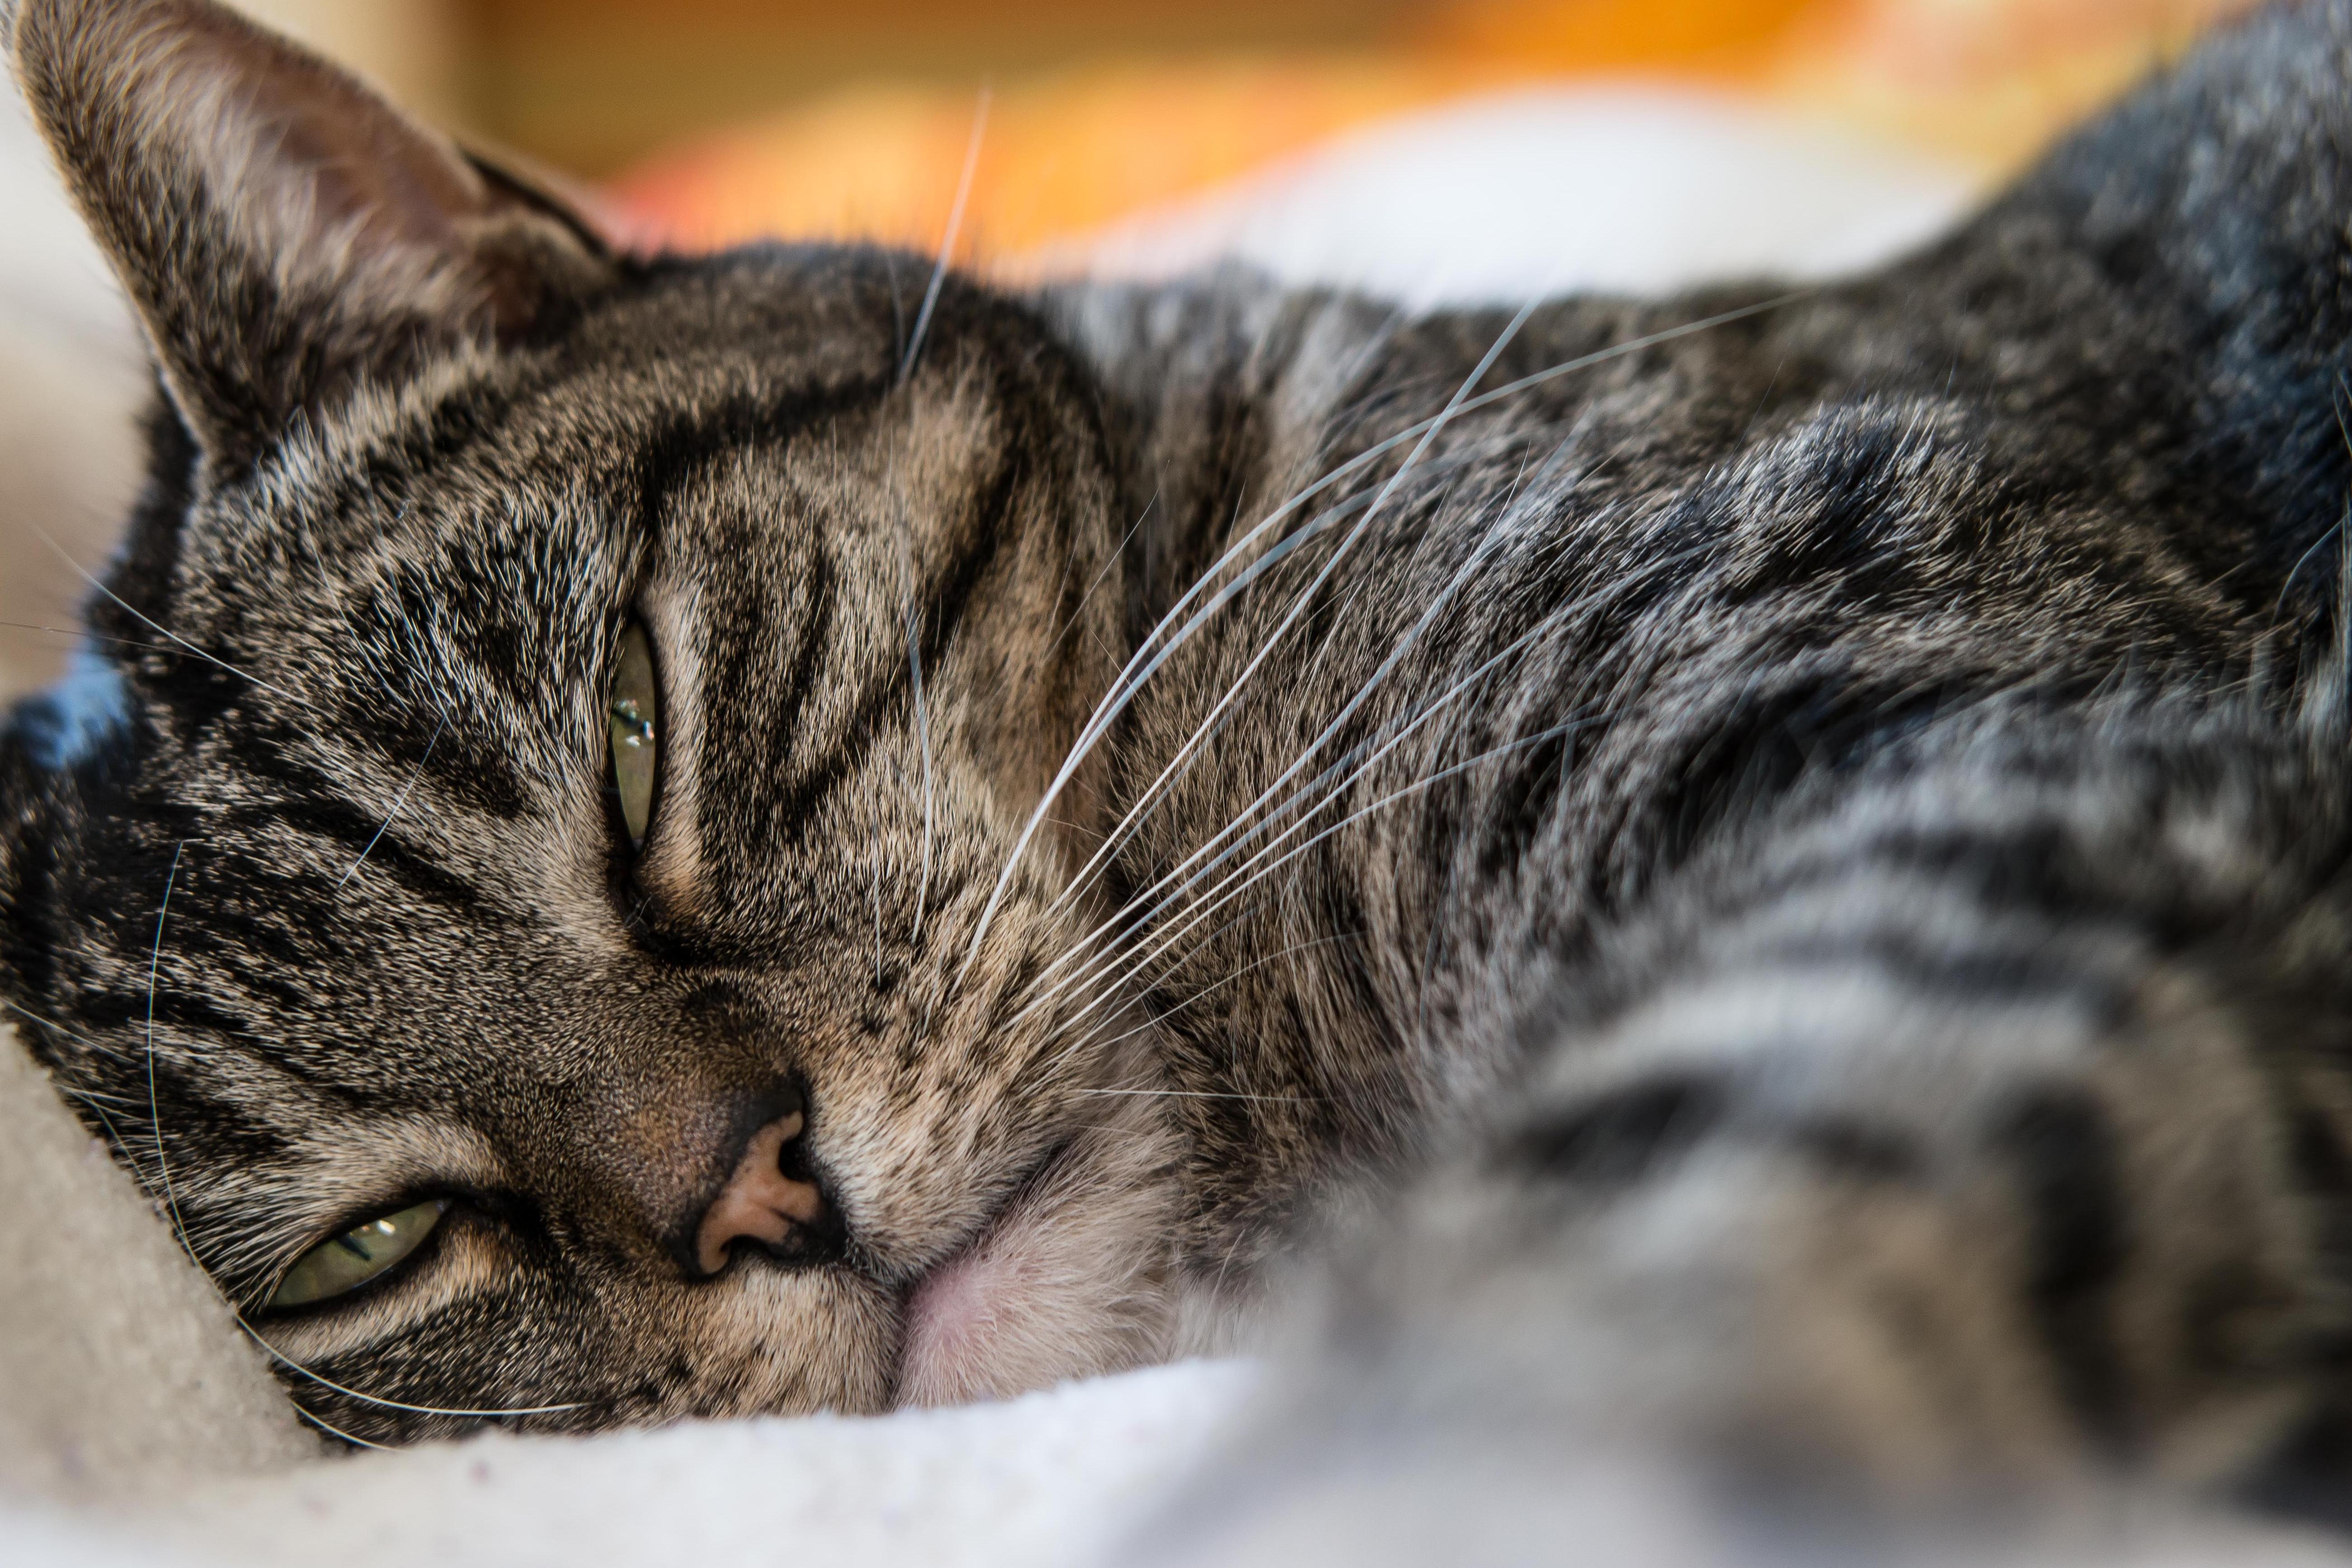 免费照片 猫 动物 宠物 肖像 毛皮 可爱 小猫 眼睛 睡眠 可爱的